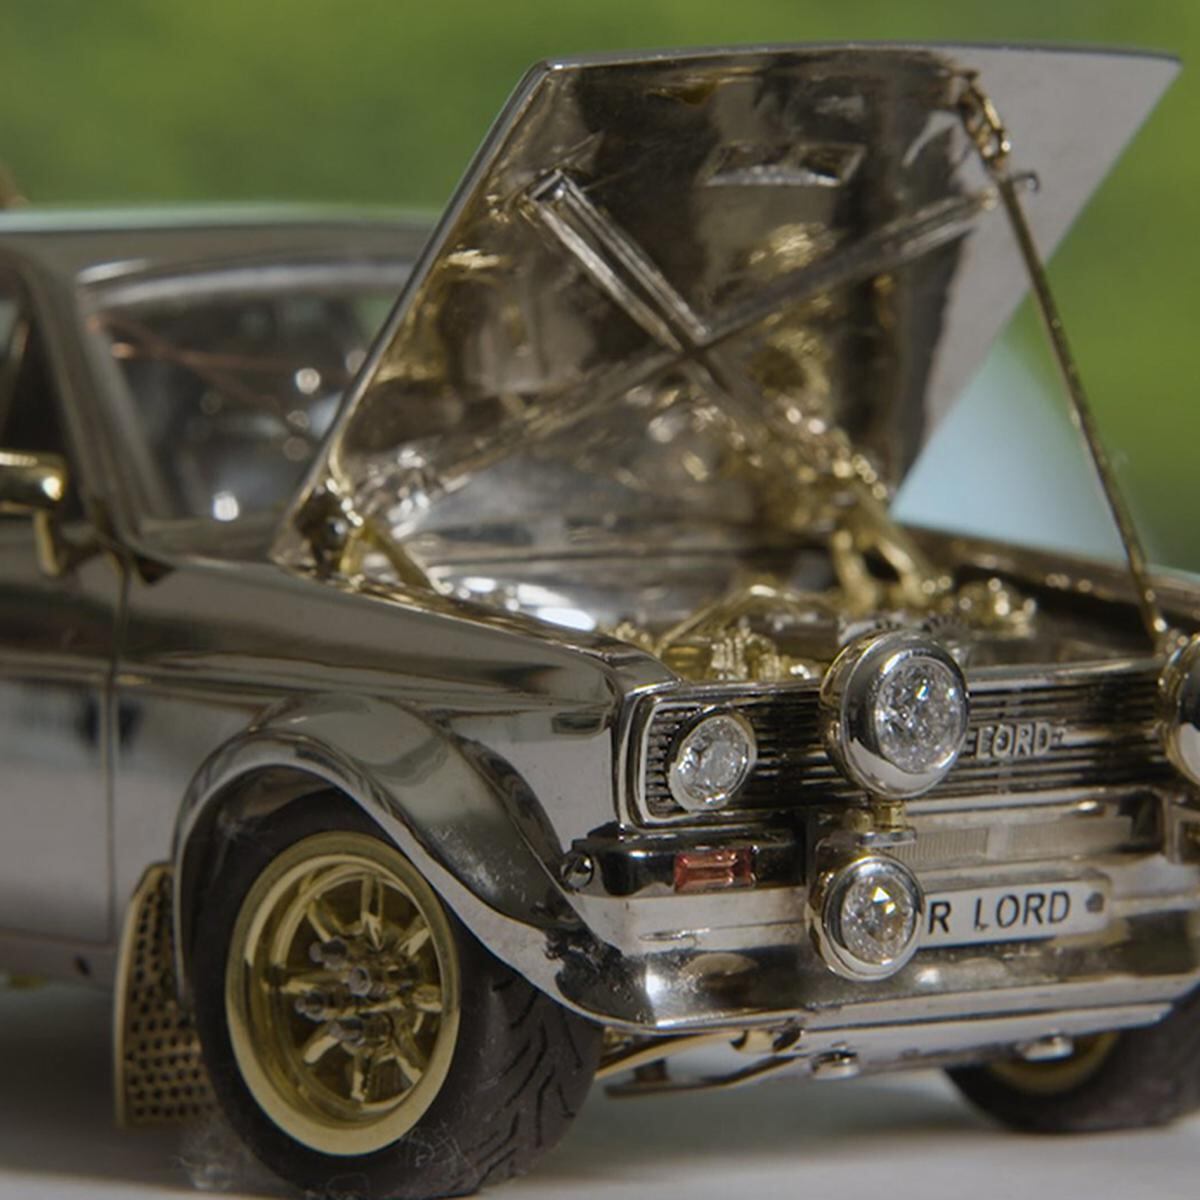 Oro parece y plata también es: una increíble maqueta de Ford Escort que  saldrá a subasta